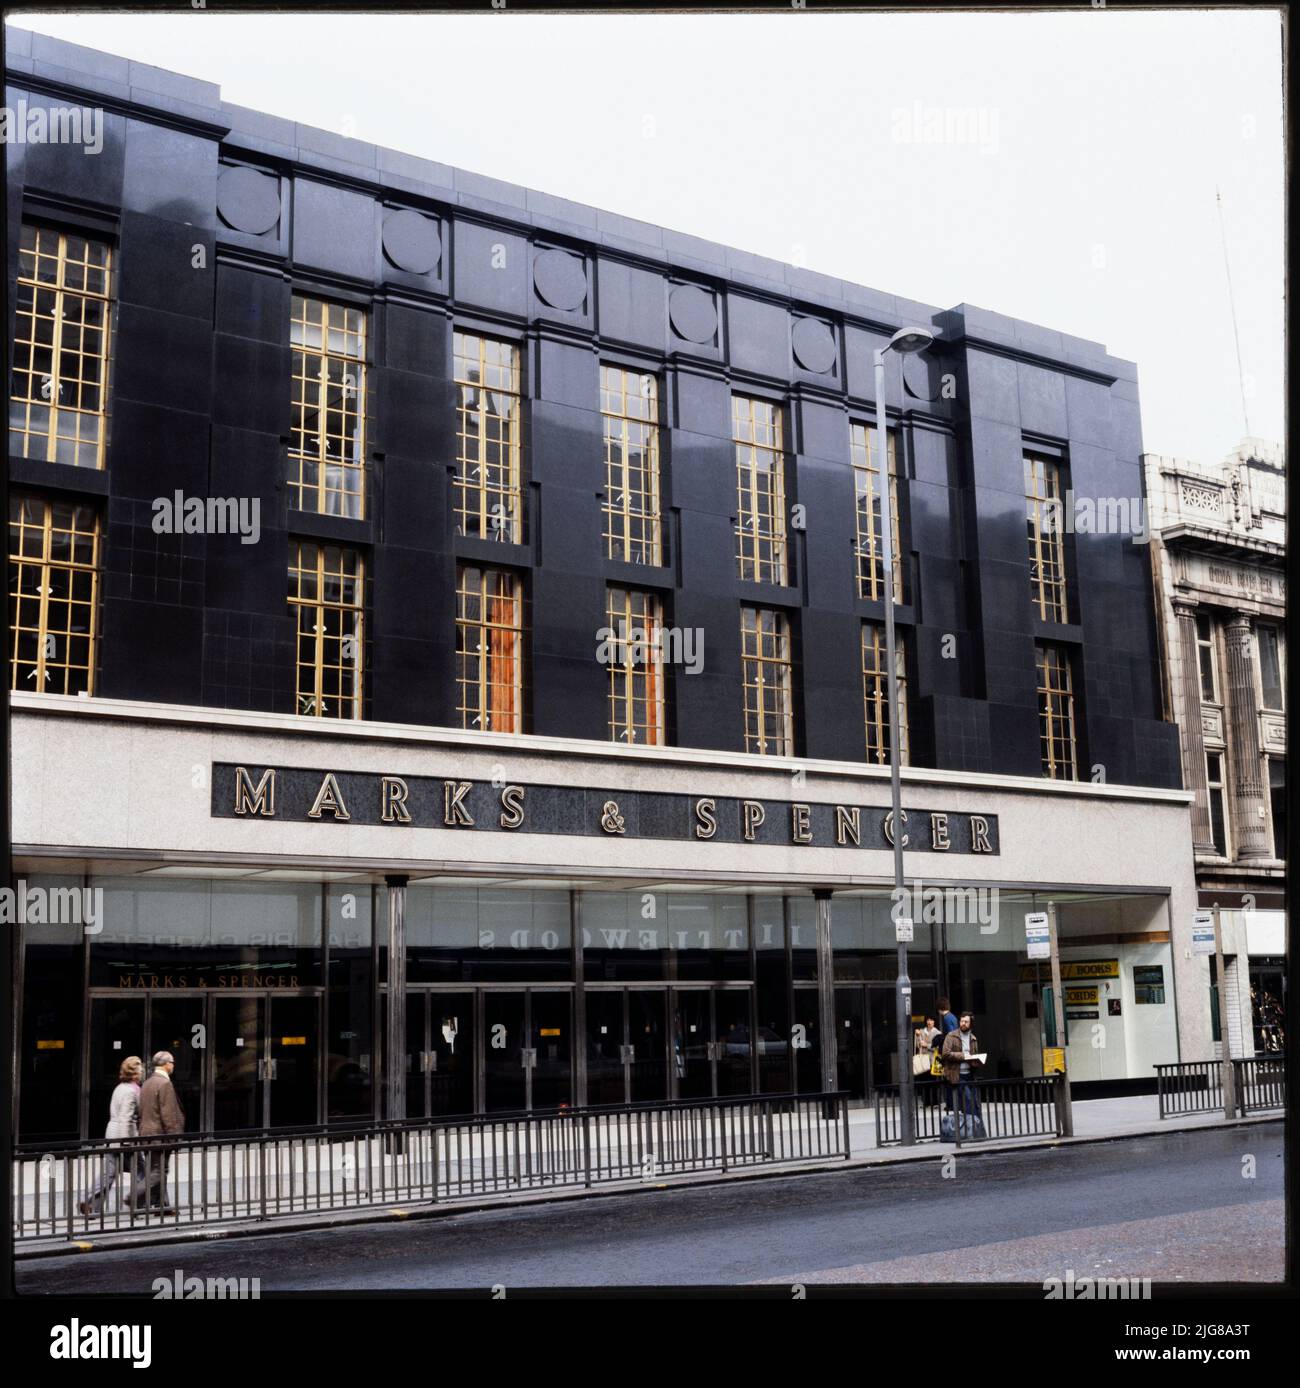 Marks and Spencer, 47-49 Briggate, Leeds, 1970s-1990s. L'élévation avant du magasin Marks and Spencer au 47-49 Briggate, montrant la façade en granit poli foncé et les barres de vitrage dorées dans les fenêtres de l'étage supérieur. Marks and Spencer a ouvert ses portes à Leeds au 76 Briggate en 1909. Le magasin n° 47-49 Briggate a ouvert ses portes en 1951. C'est l'un des quelques exemples de magasins Marks and Spencer aux façades en granit, un autre étant le Panthéon, Londres. Banque D'Images